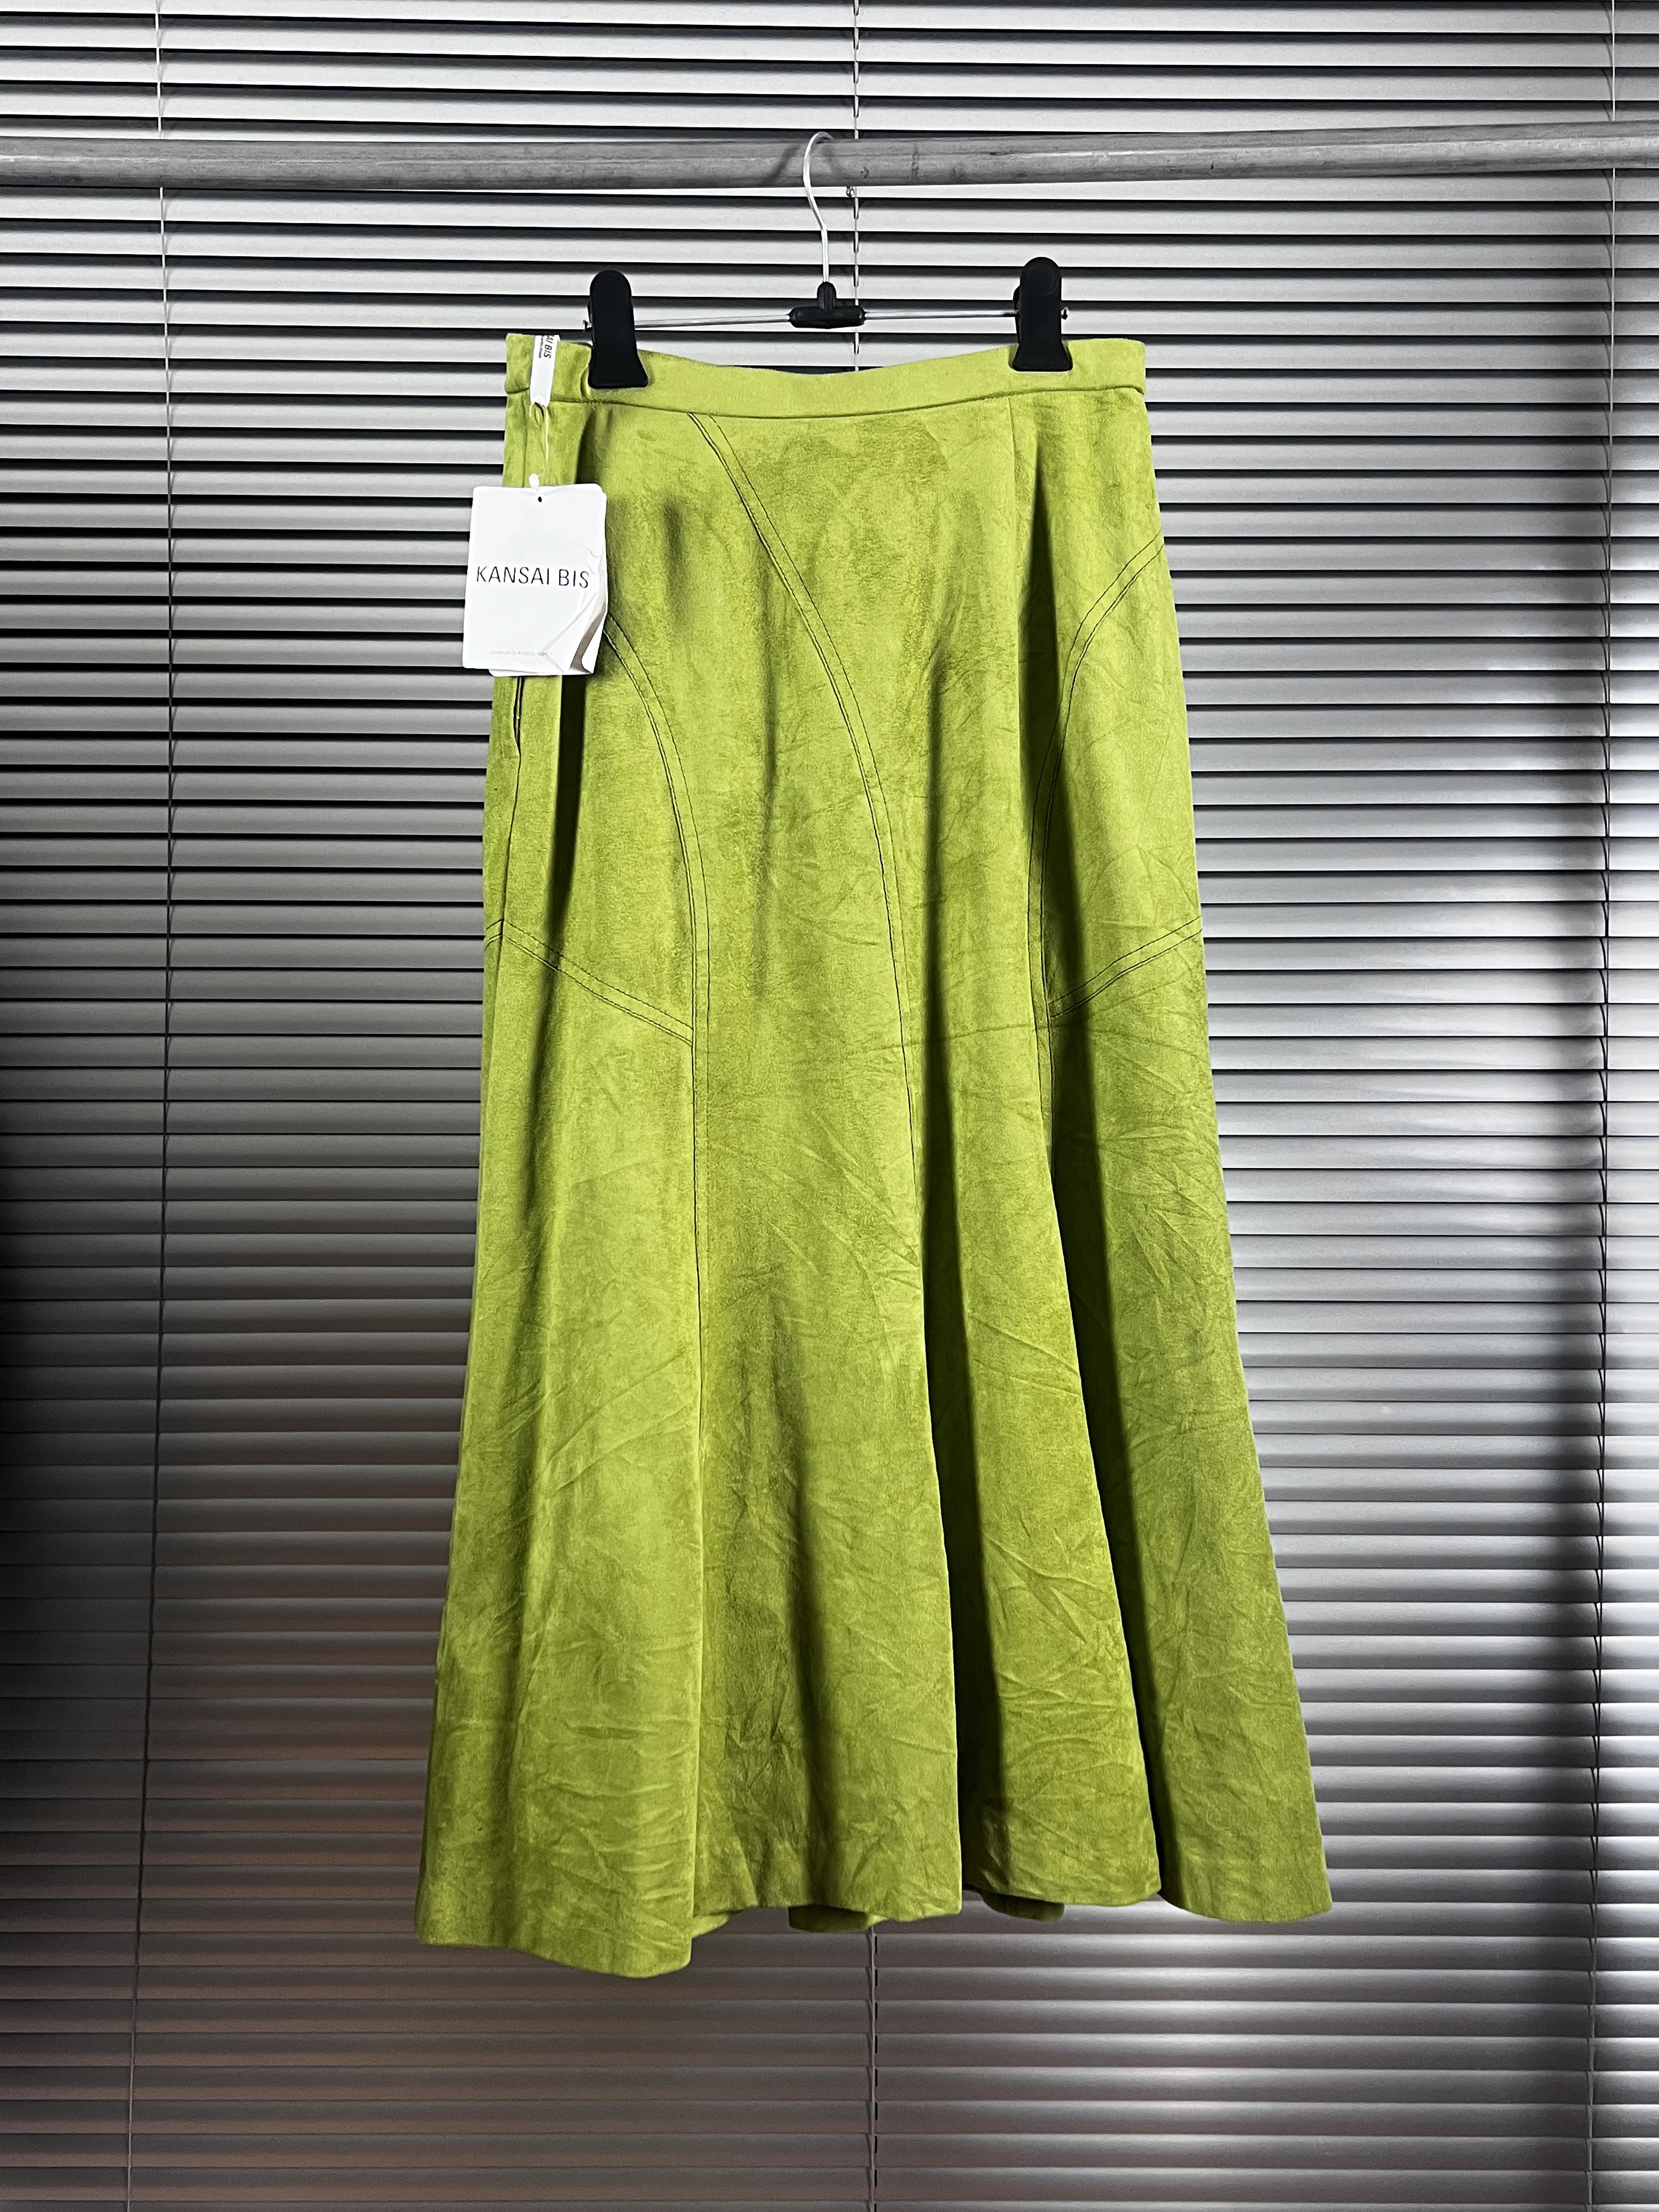 KANSAI BIS by kansai yamamoto fake suede skirts (unused)